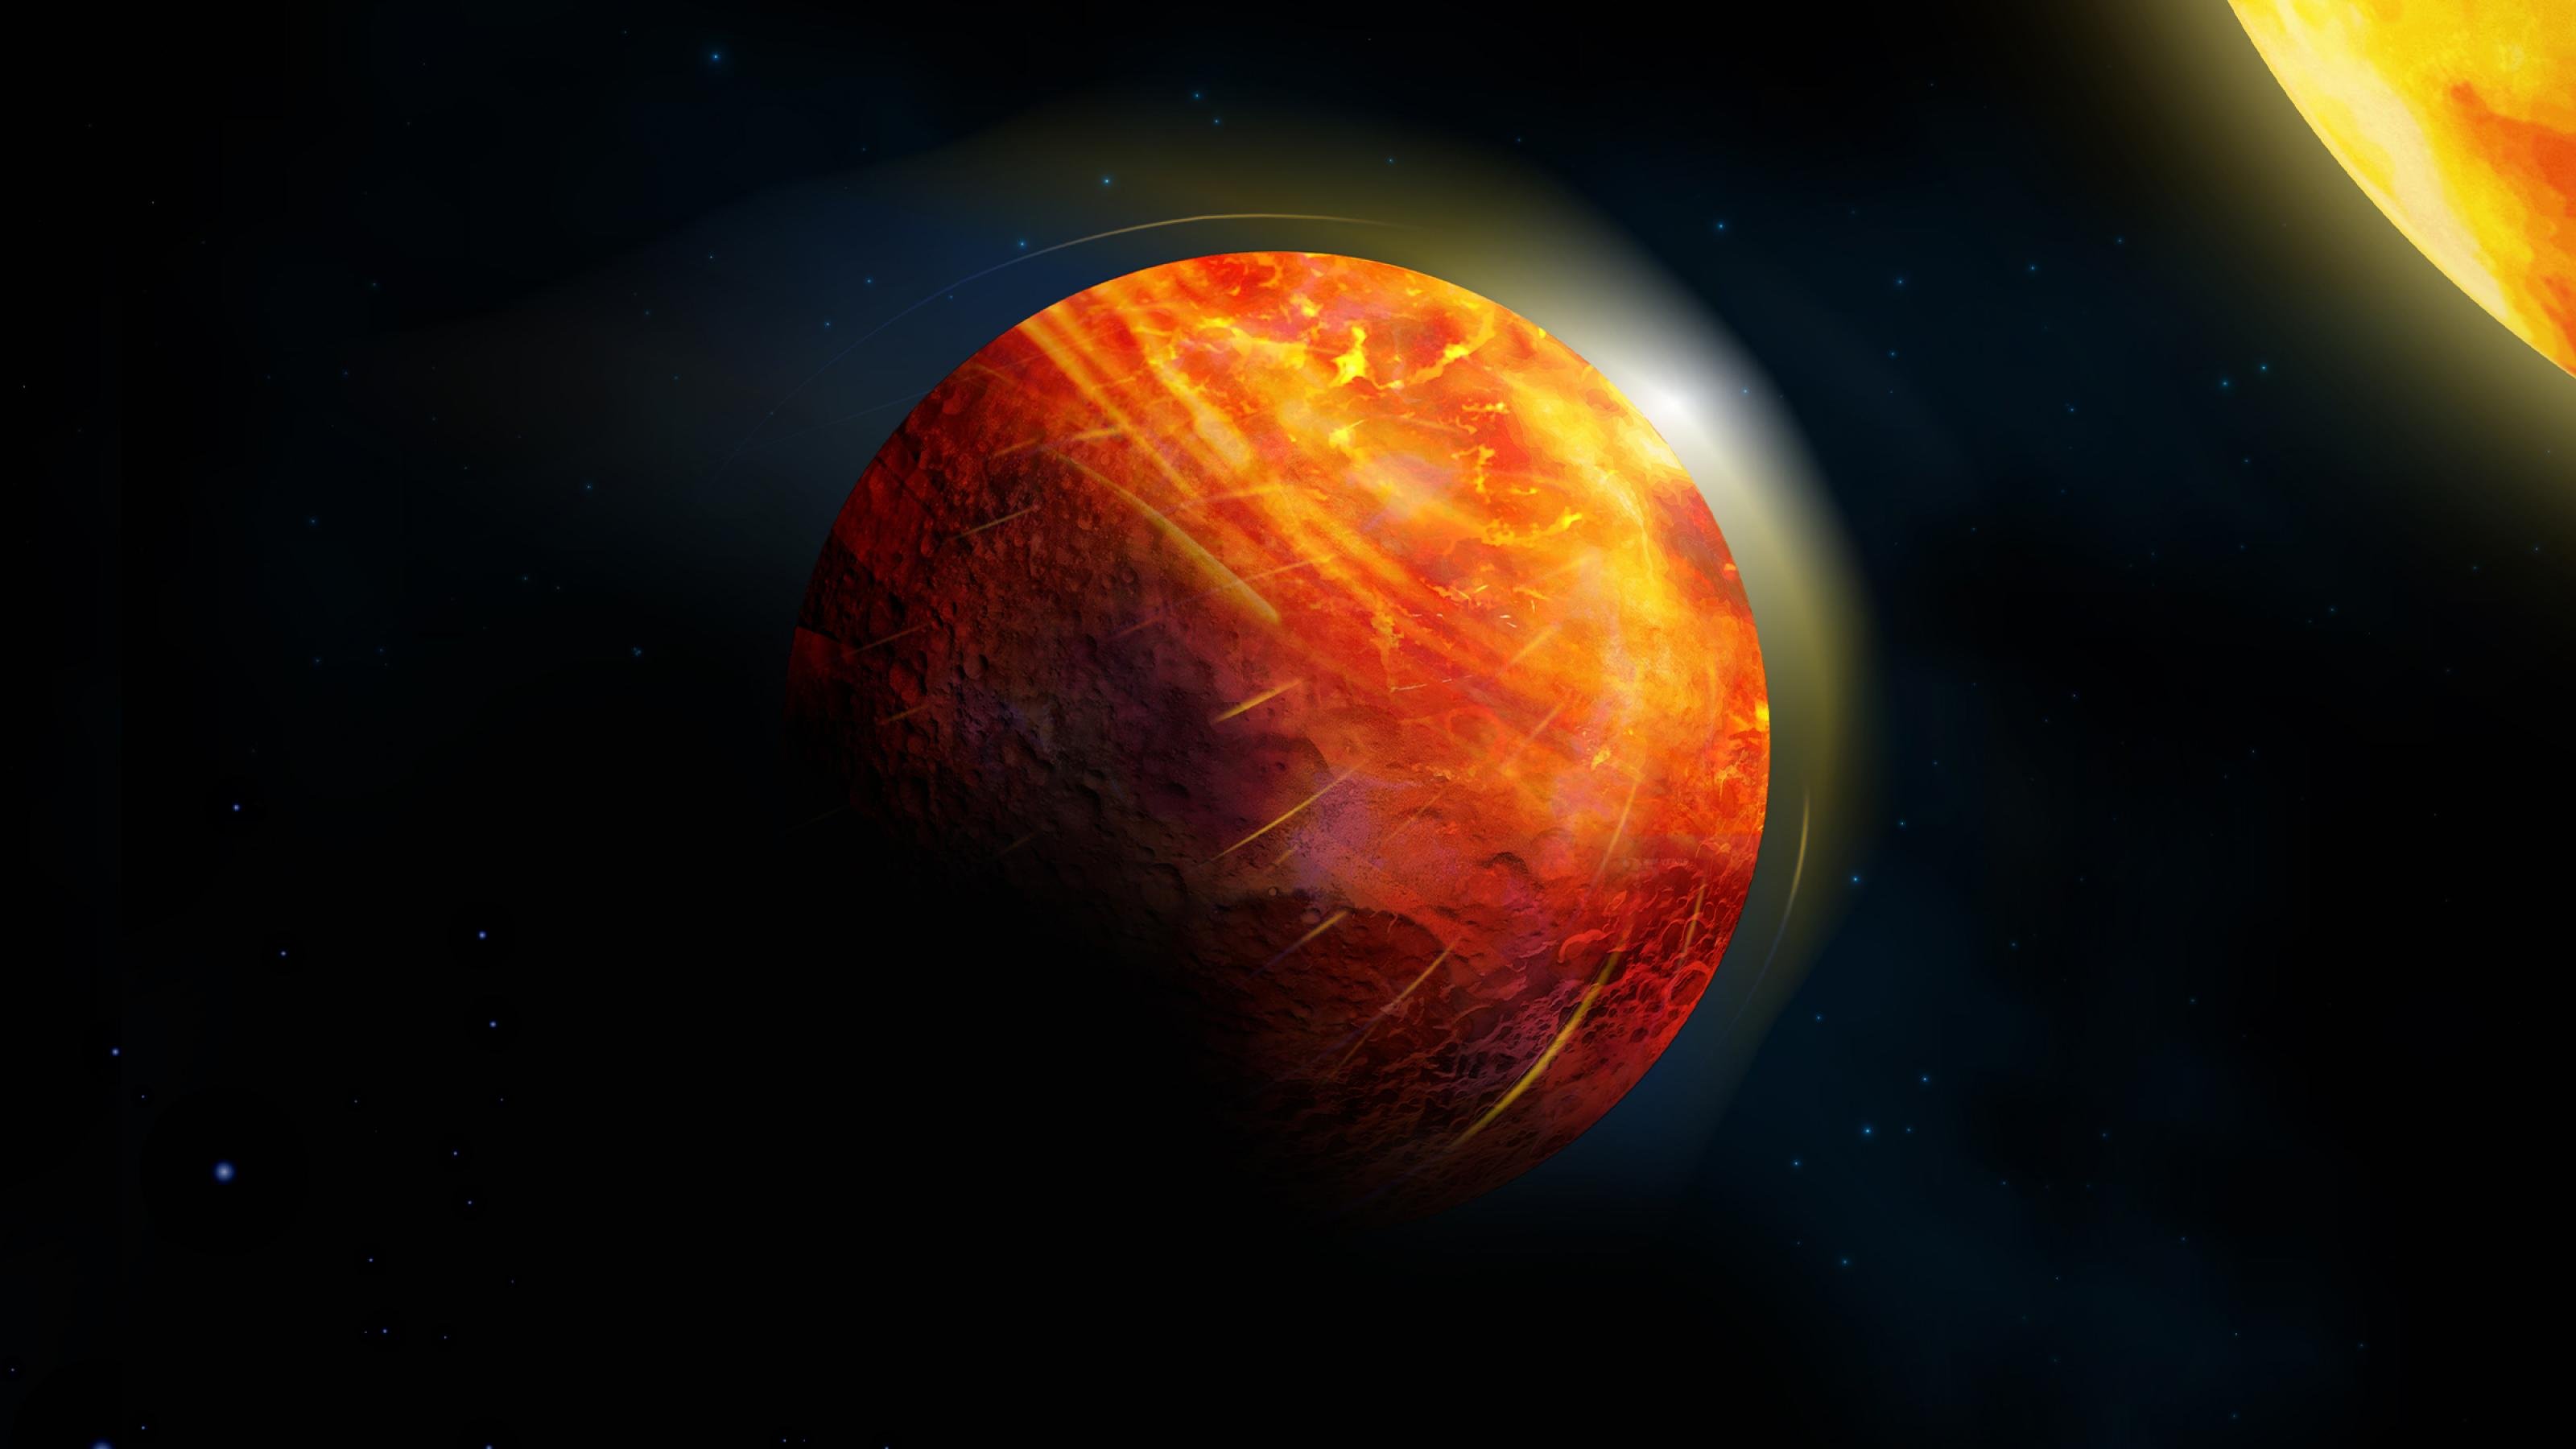 Die künstlerische Darstellung zeigt im Zentrum Lavaplaneten, der einen orange-roten Stern umkreist. Der Stern befindet sich rechts oben im Bild und ist nur im Ausschnitt zu sehen. Der Exoplanet selbst ist ebenfalls rötlich eingefärbt.